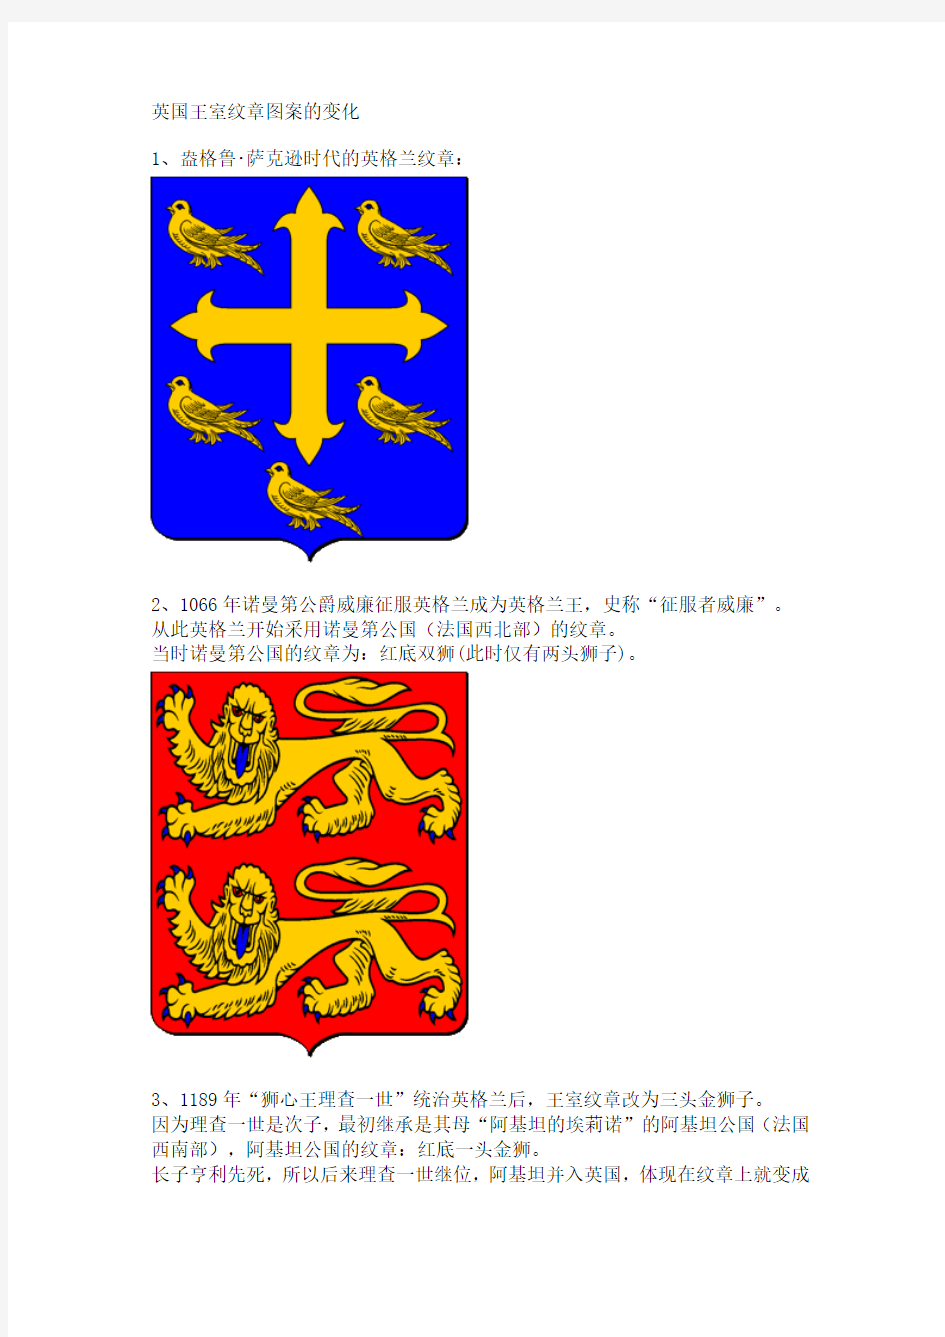 英国王室纹章图案的变化